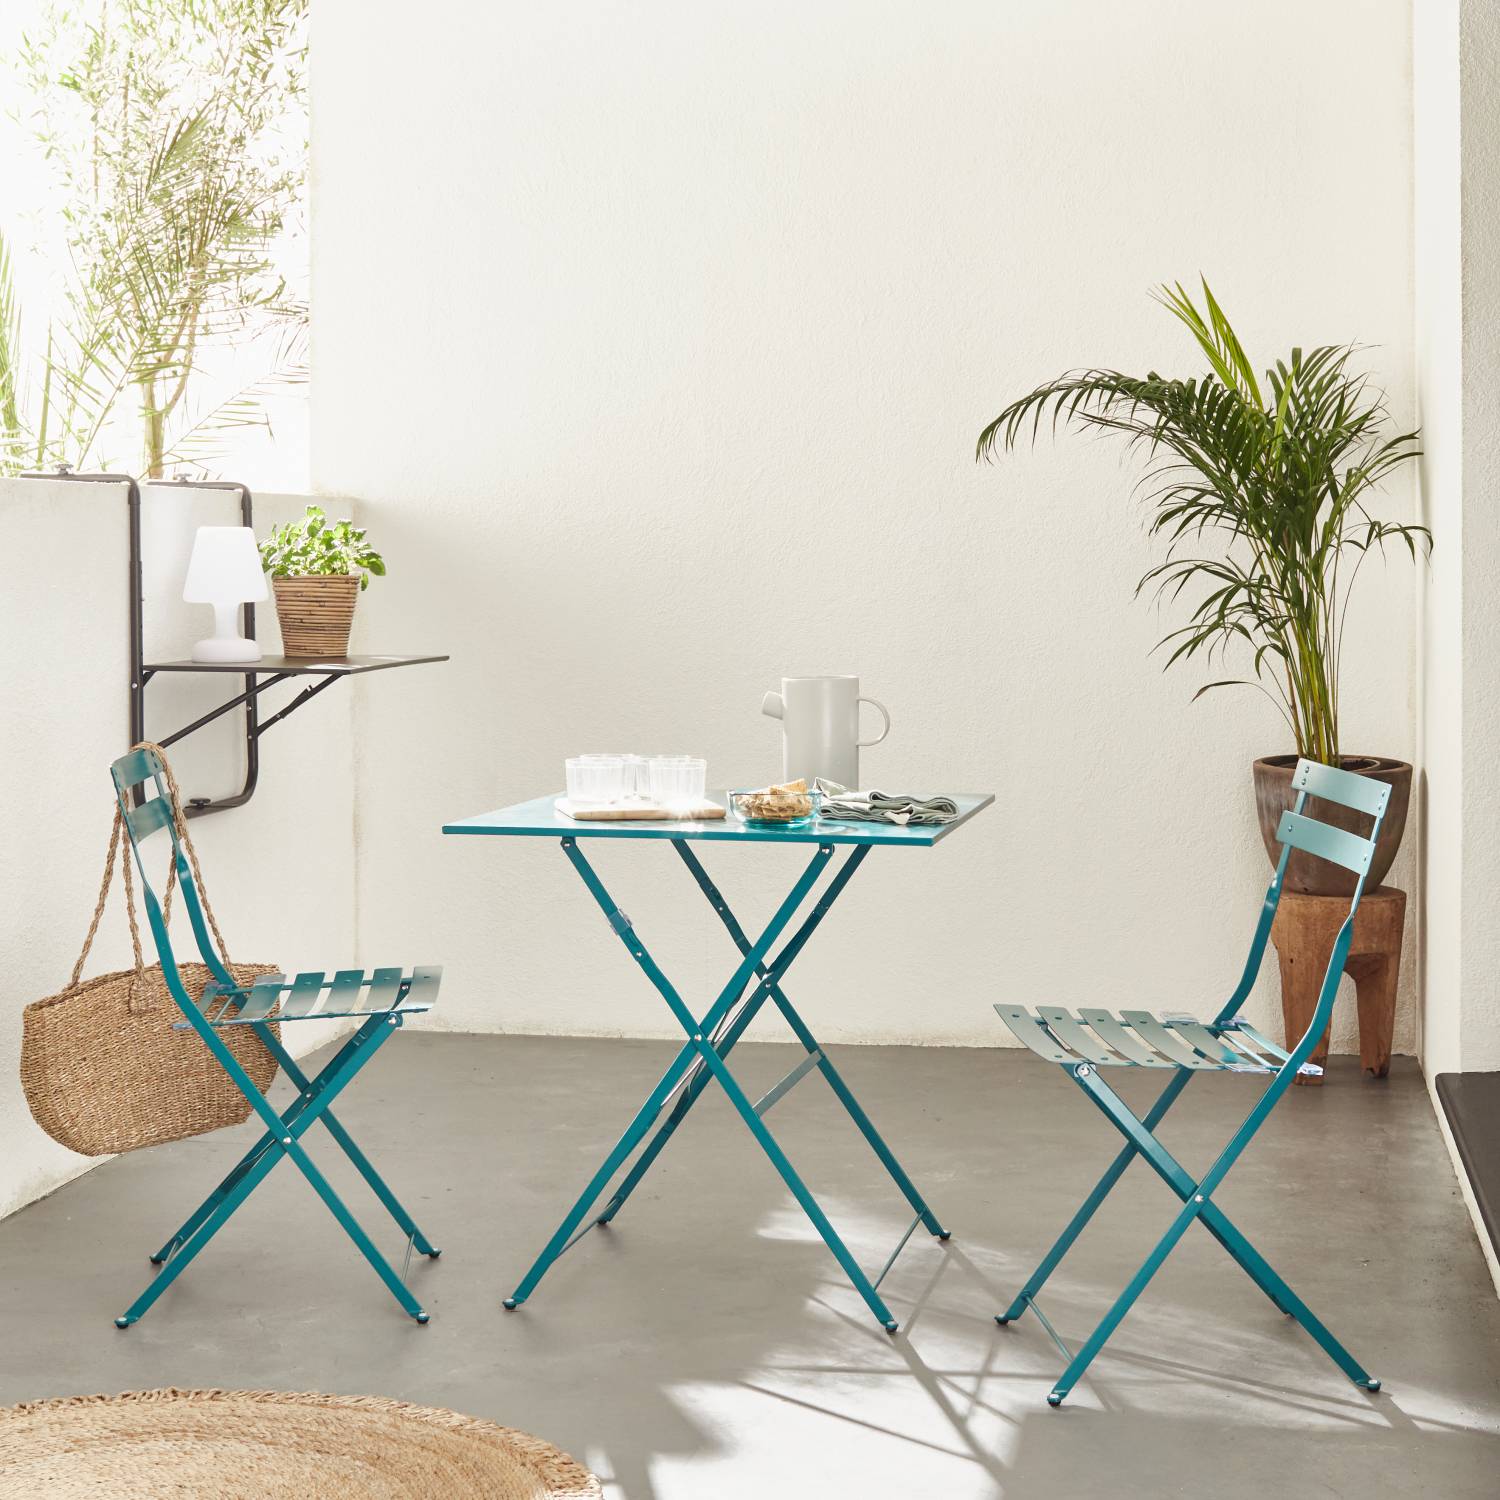 Mueble de jardín Emilia color verde pato, plegable bistro, mesa 70x70cm con dos sillas plegables, acero pintado en polvo | sweeek